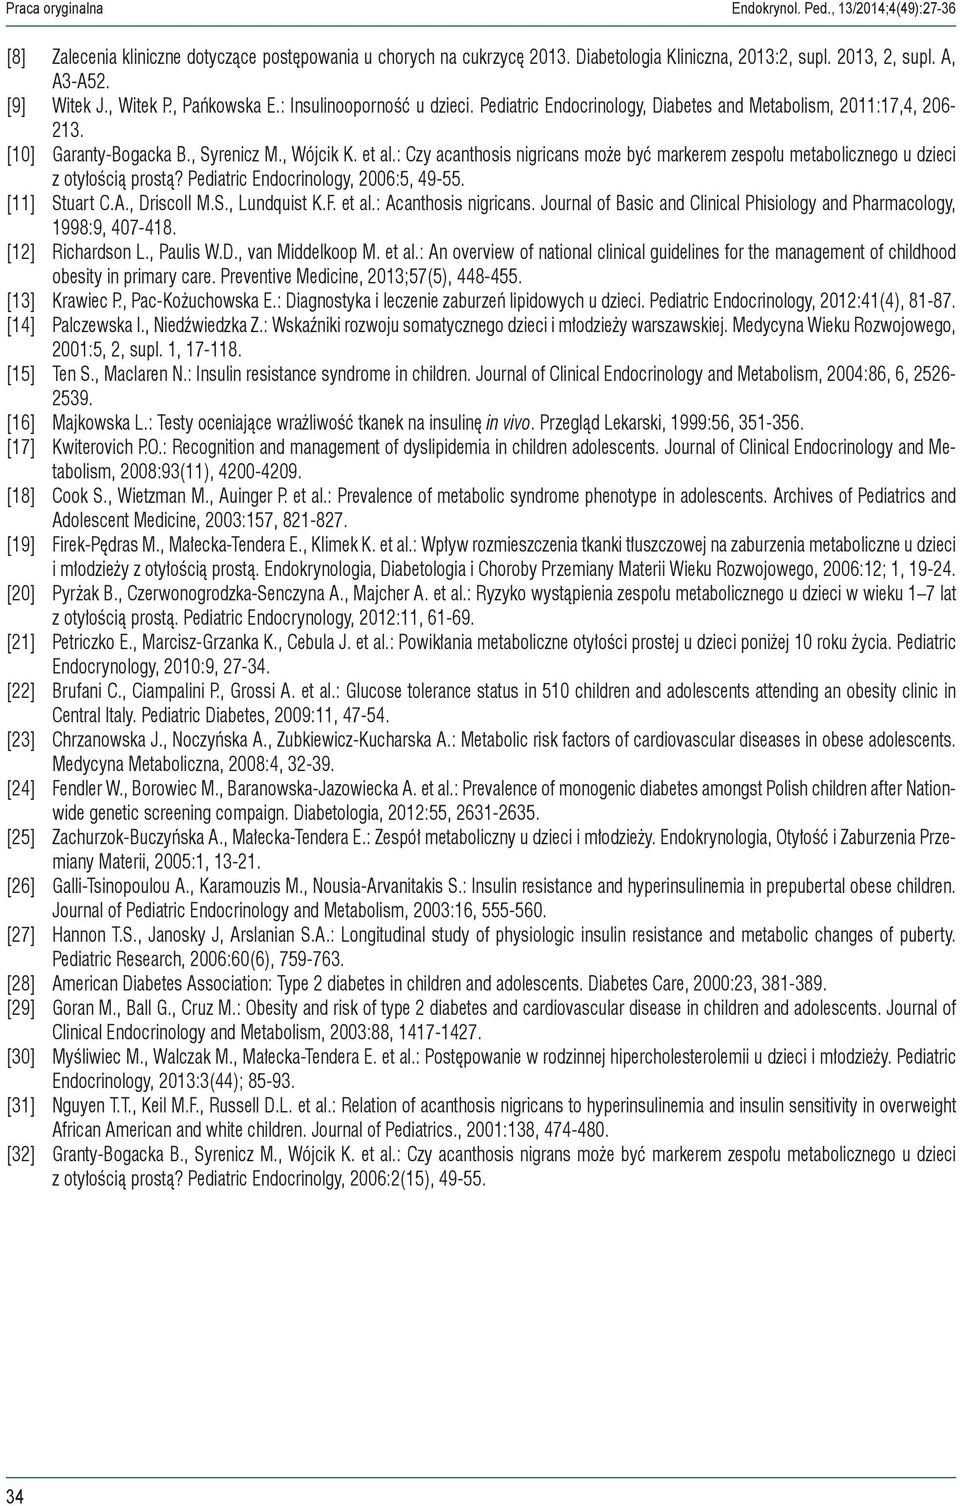 : Czy acanthosis nigricans może być markerem zespołu metabolicznego u dzieci z otyłością prostą? Pediatric Endocrinology, 2006:5, 49-55. [11] Stuart C.A., Driscoll M.S., Lundquist K.F. et al.